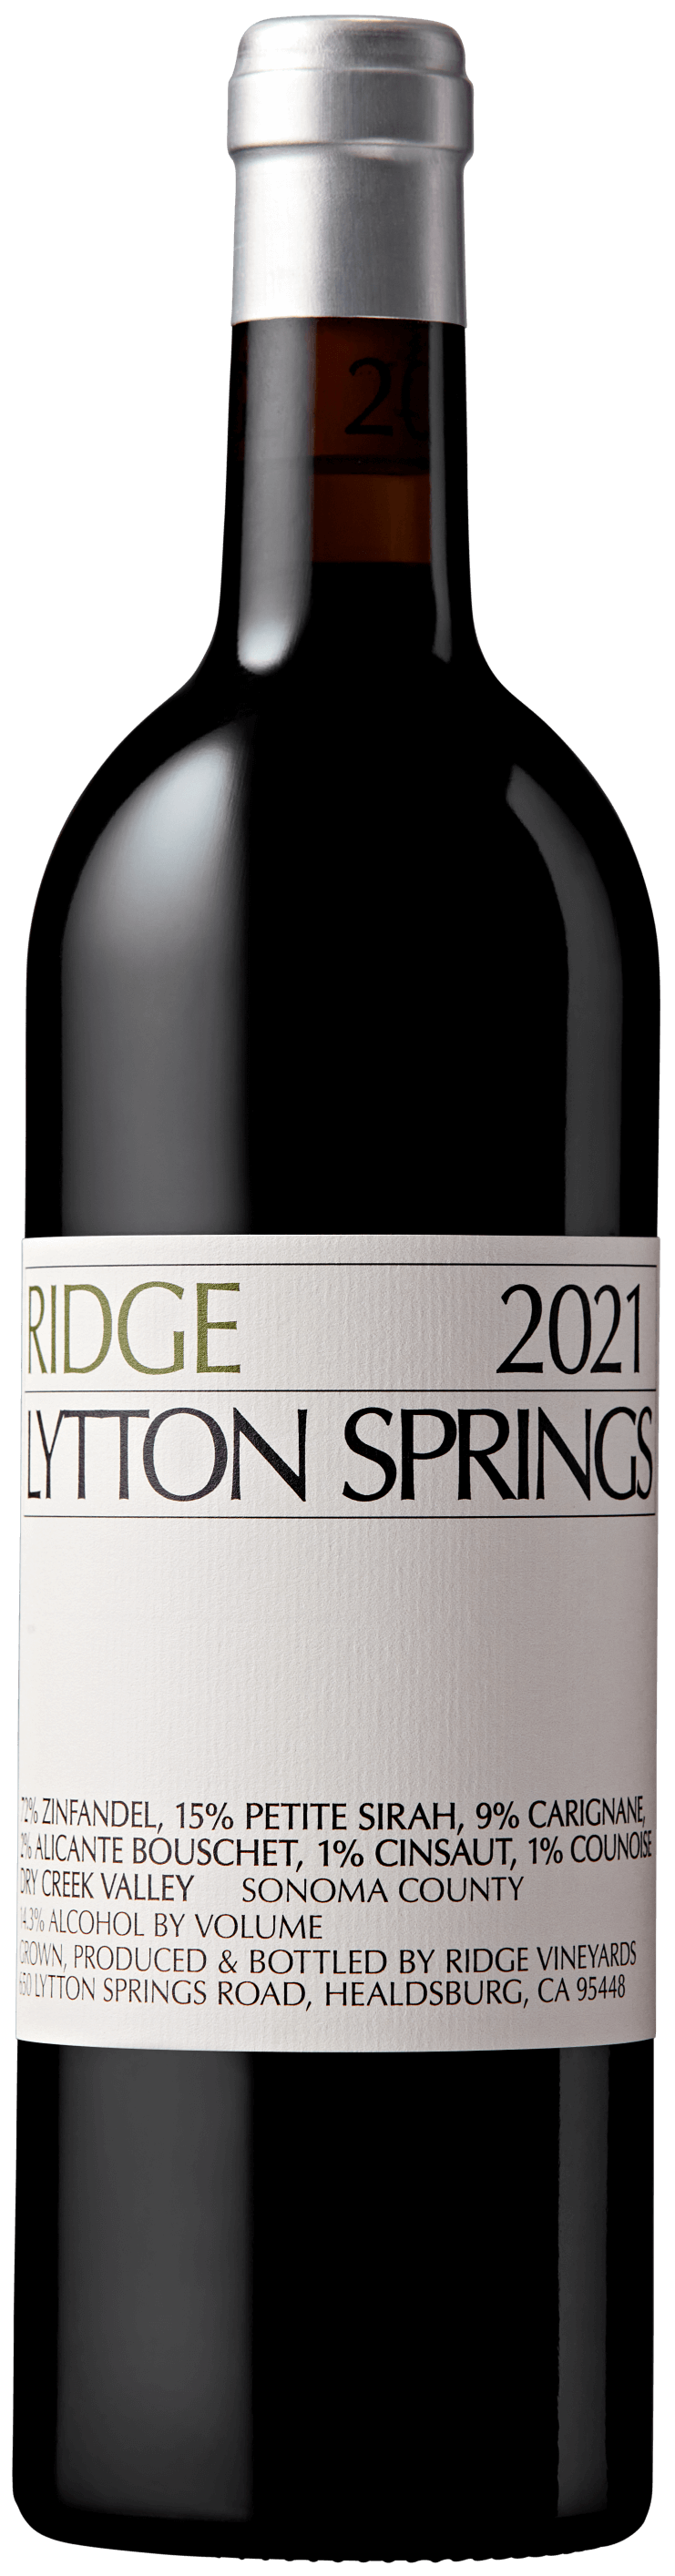 2021 Lytton Springs